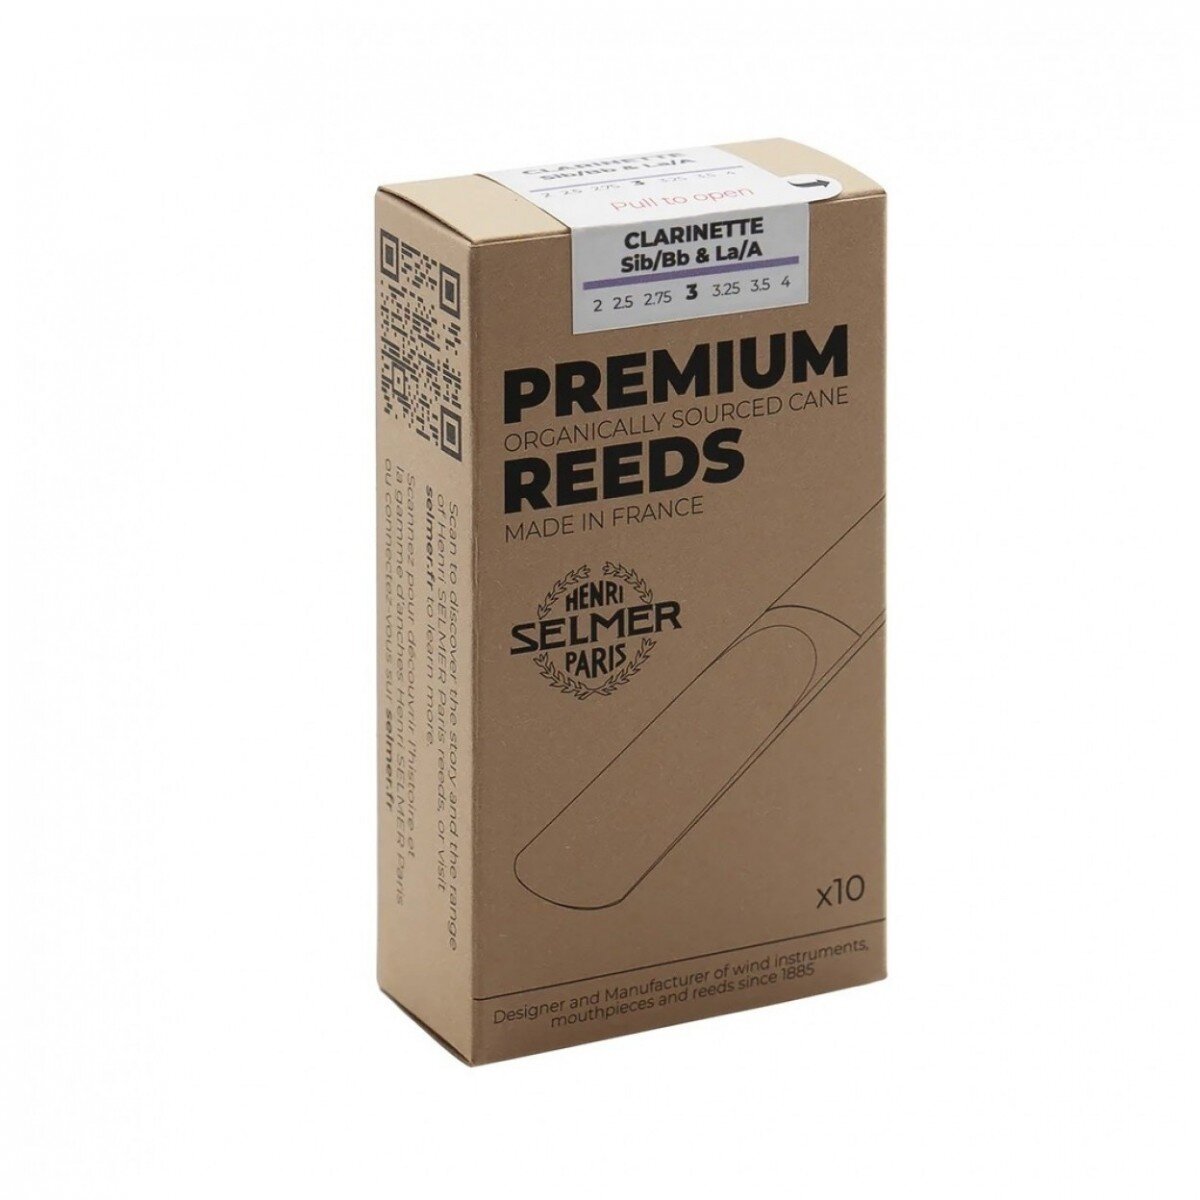 Selmer Klarinette Premium 4 : photo 1